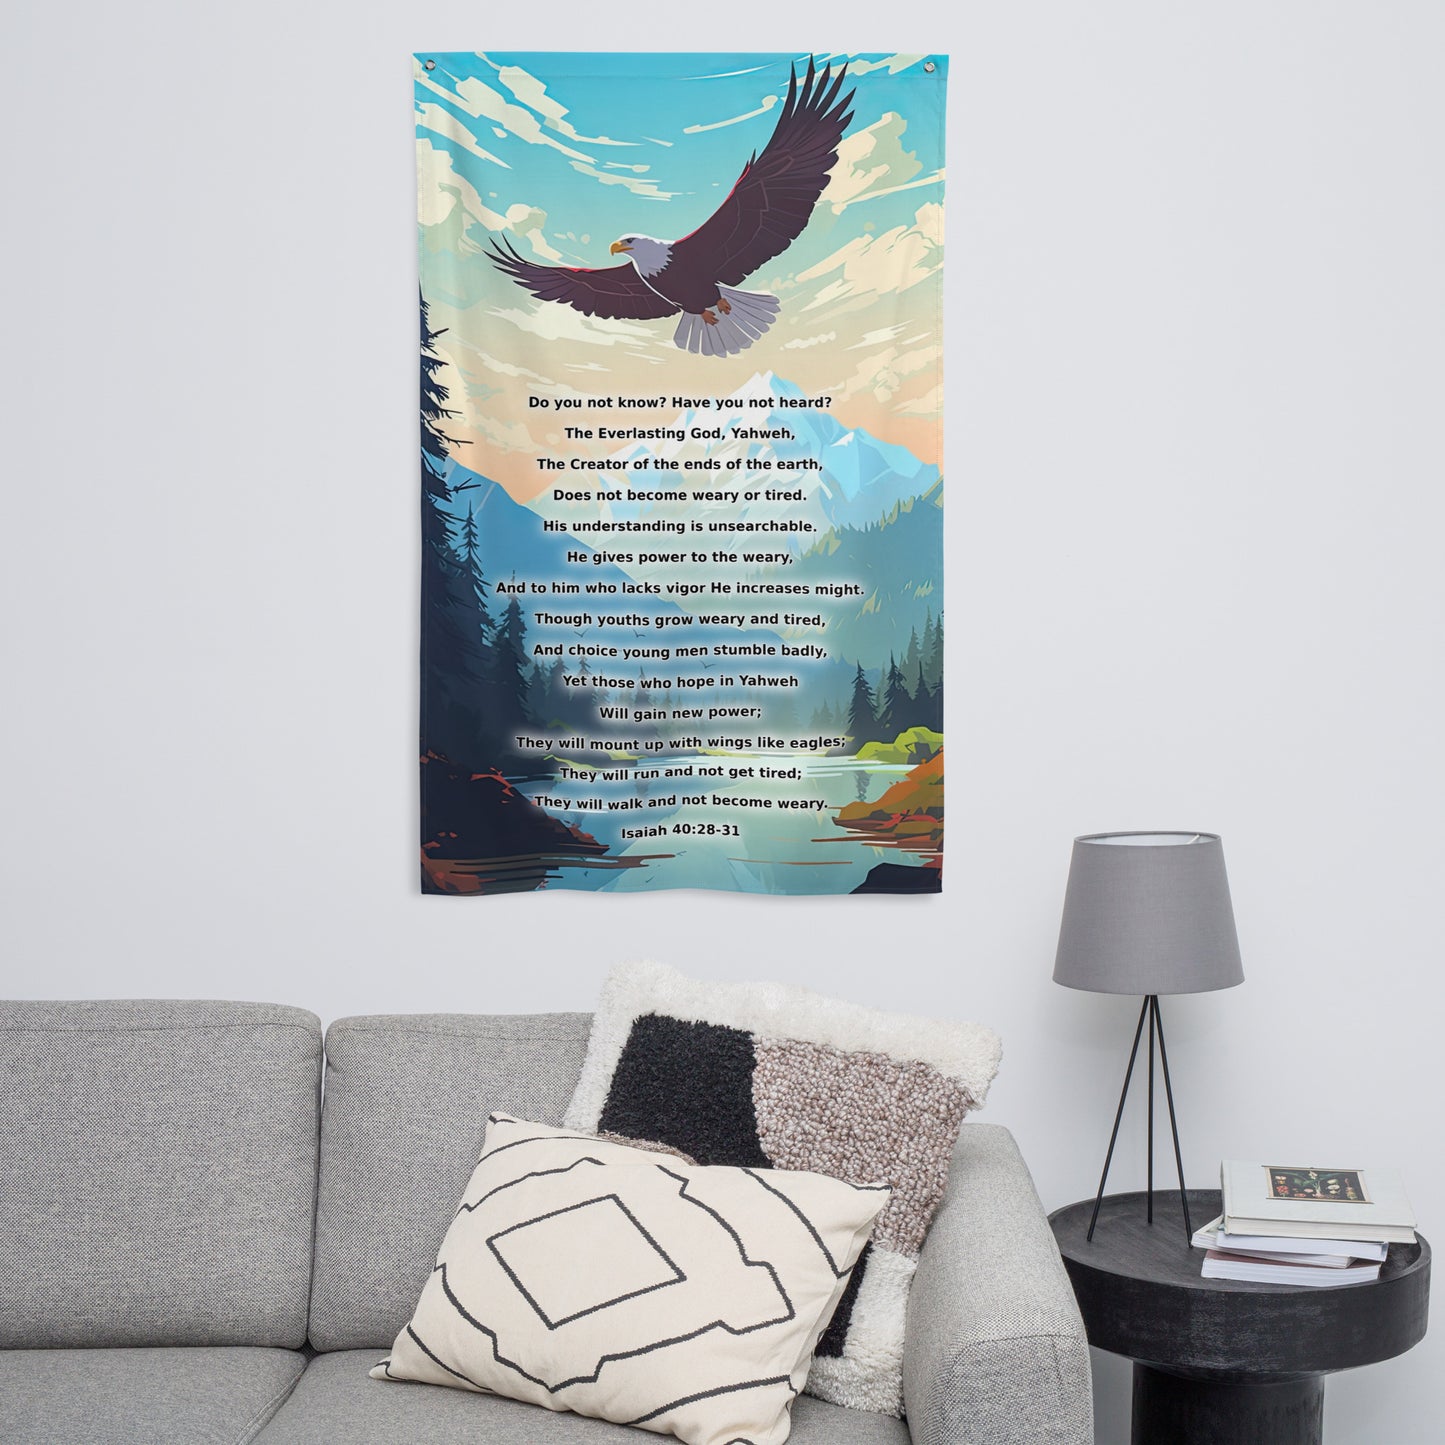 Wings like Eagles - Isaiah 40:28-31 Flag